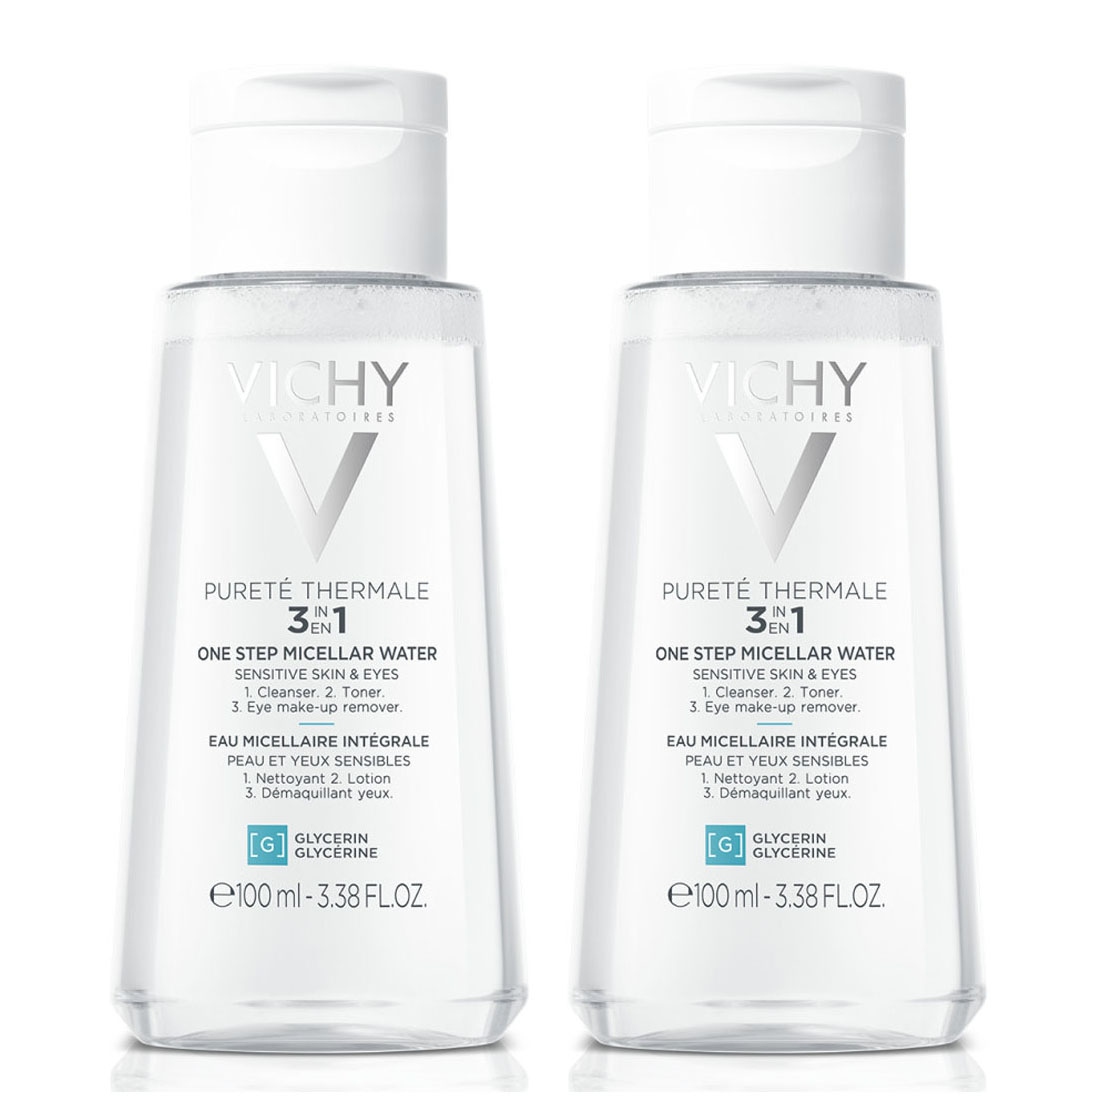 цена Vichy Мицеллярная вода универсальная для чувствительной кожи лица и вокруг глаз, 2 х 100 мл (Vichy, Purete Thermal)